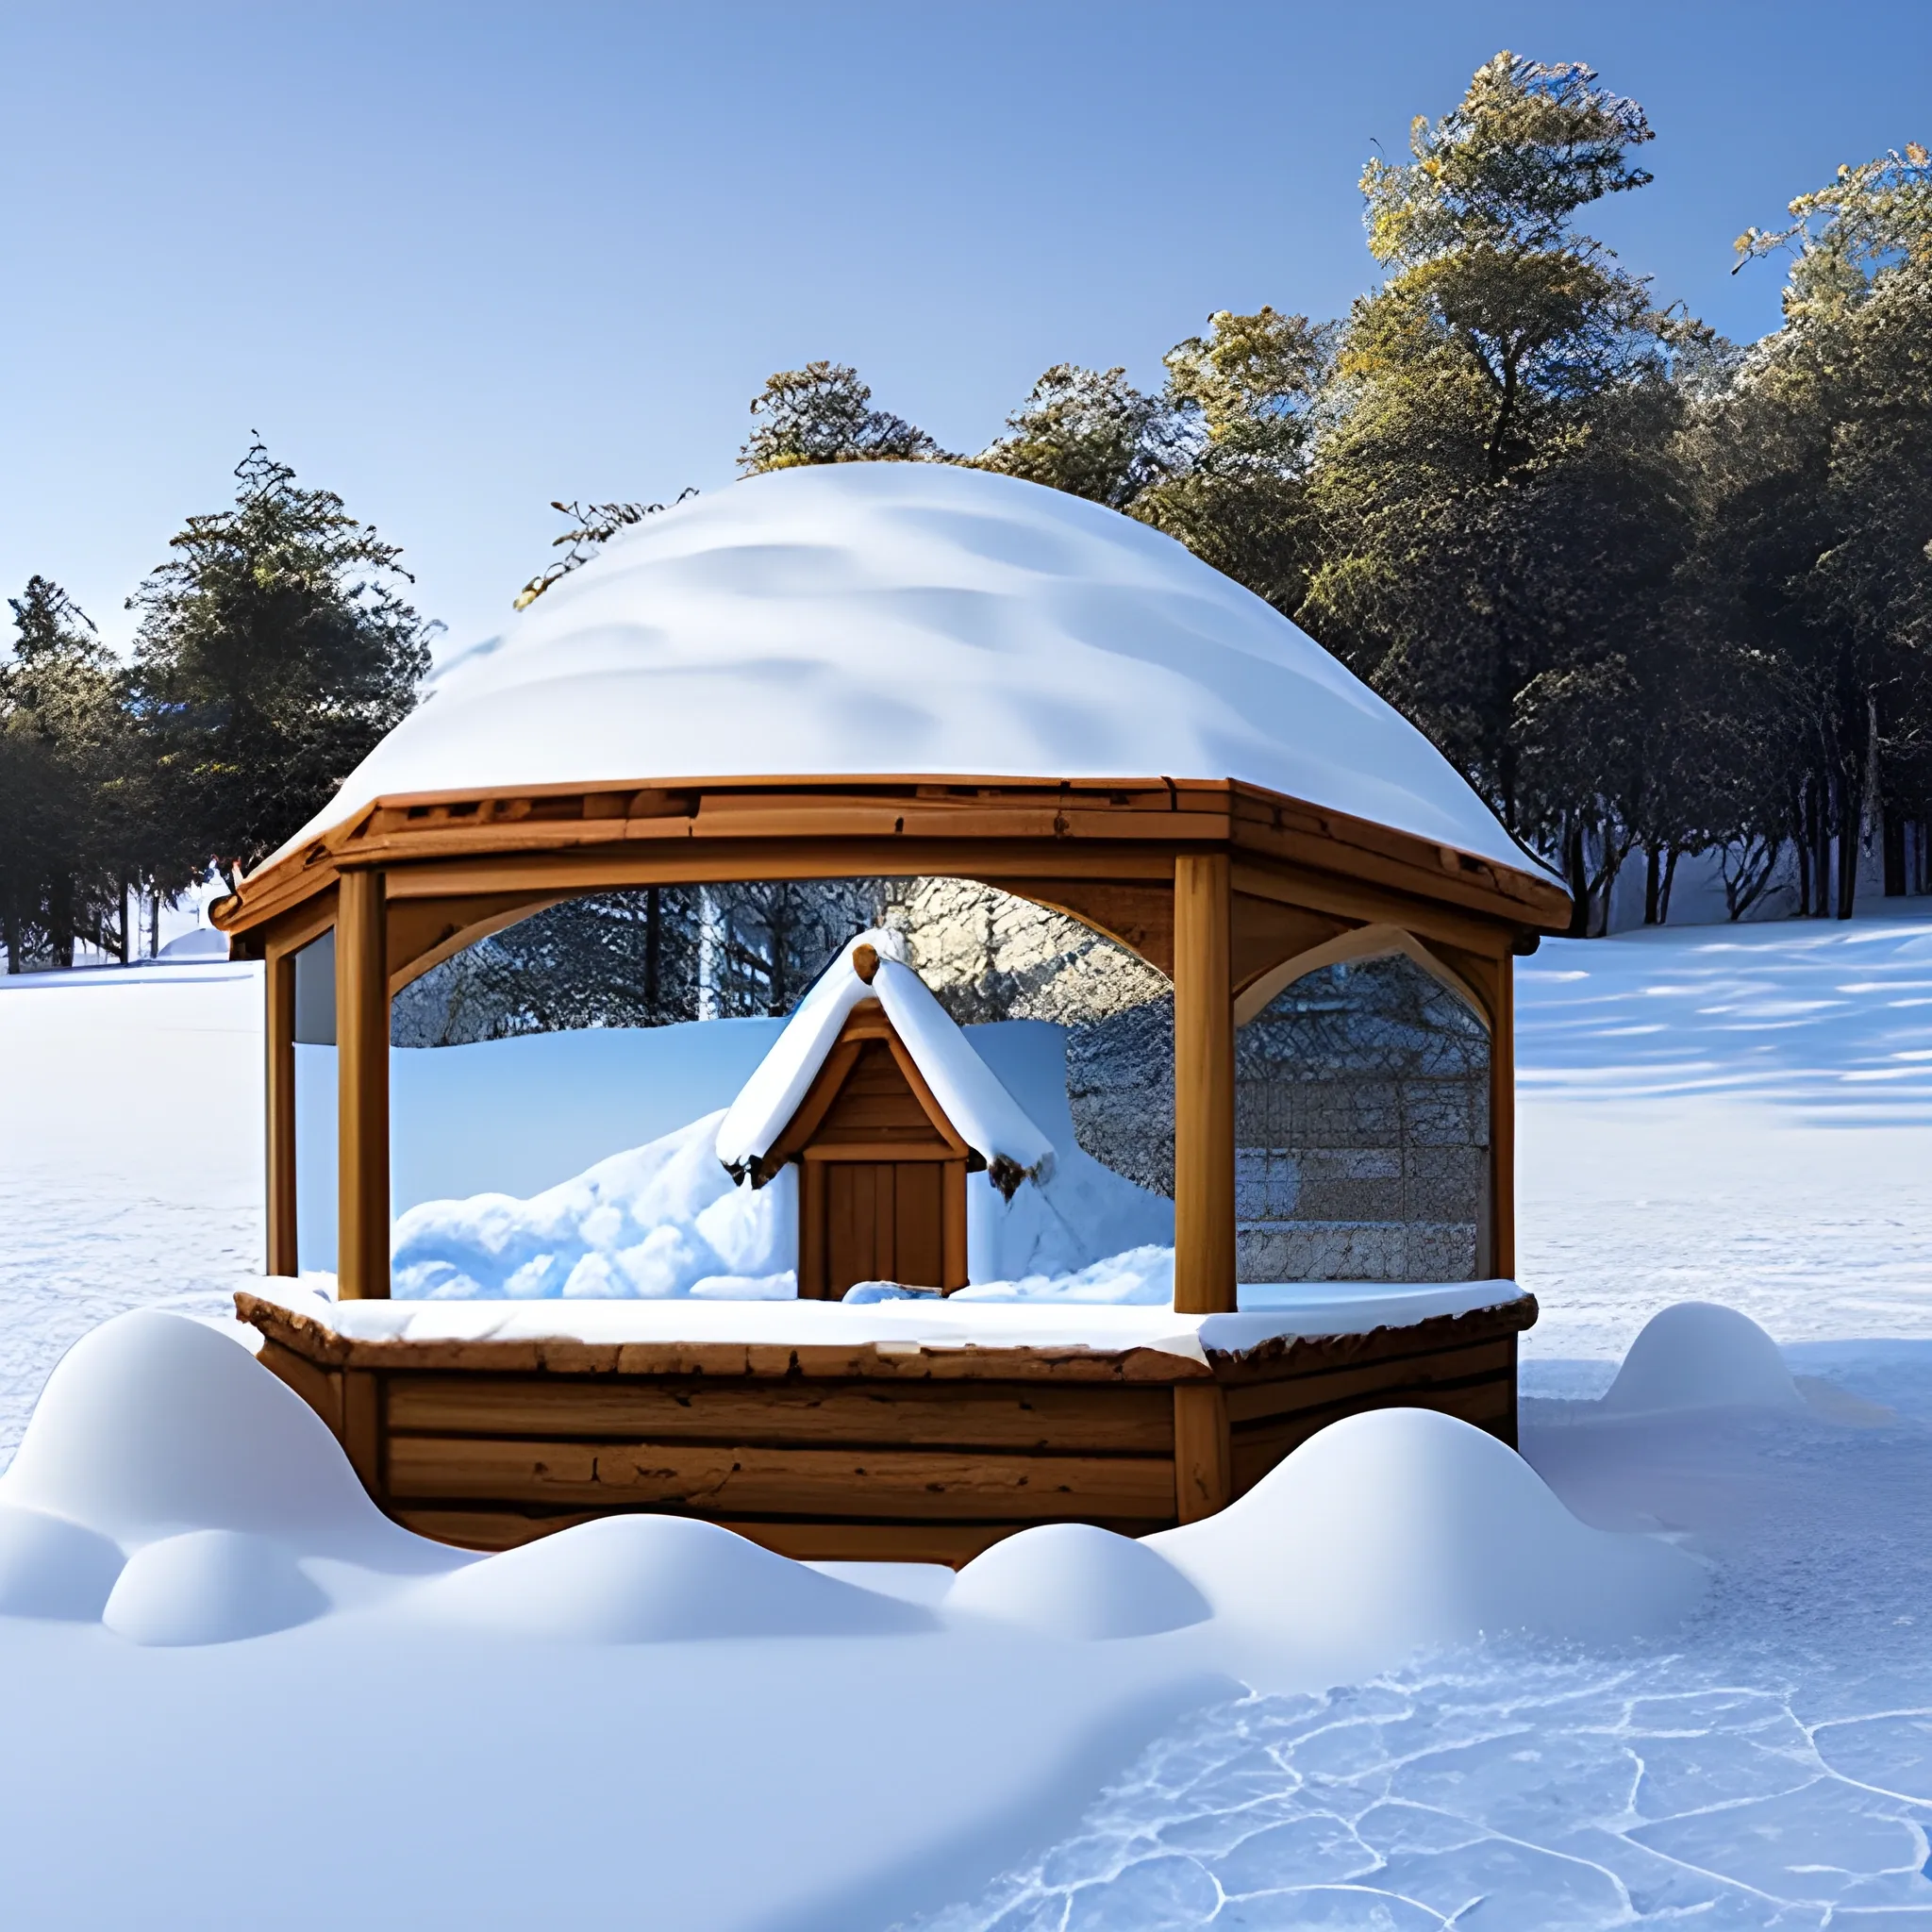 ¿Prefieres las montañas cubiertas de nieve, una cabaña acogedora junto a un lago helado ?